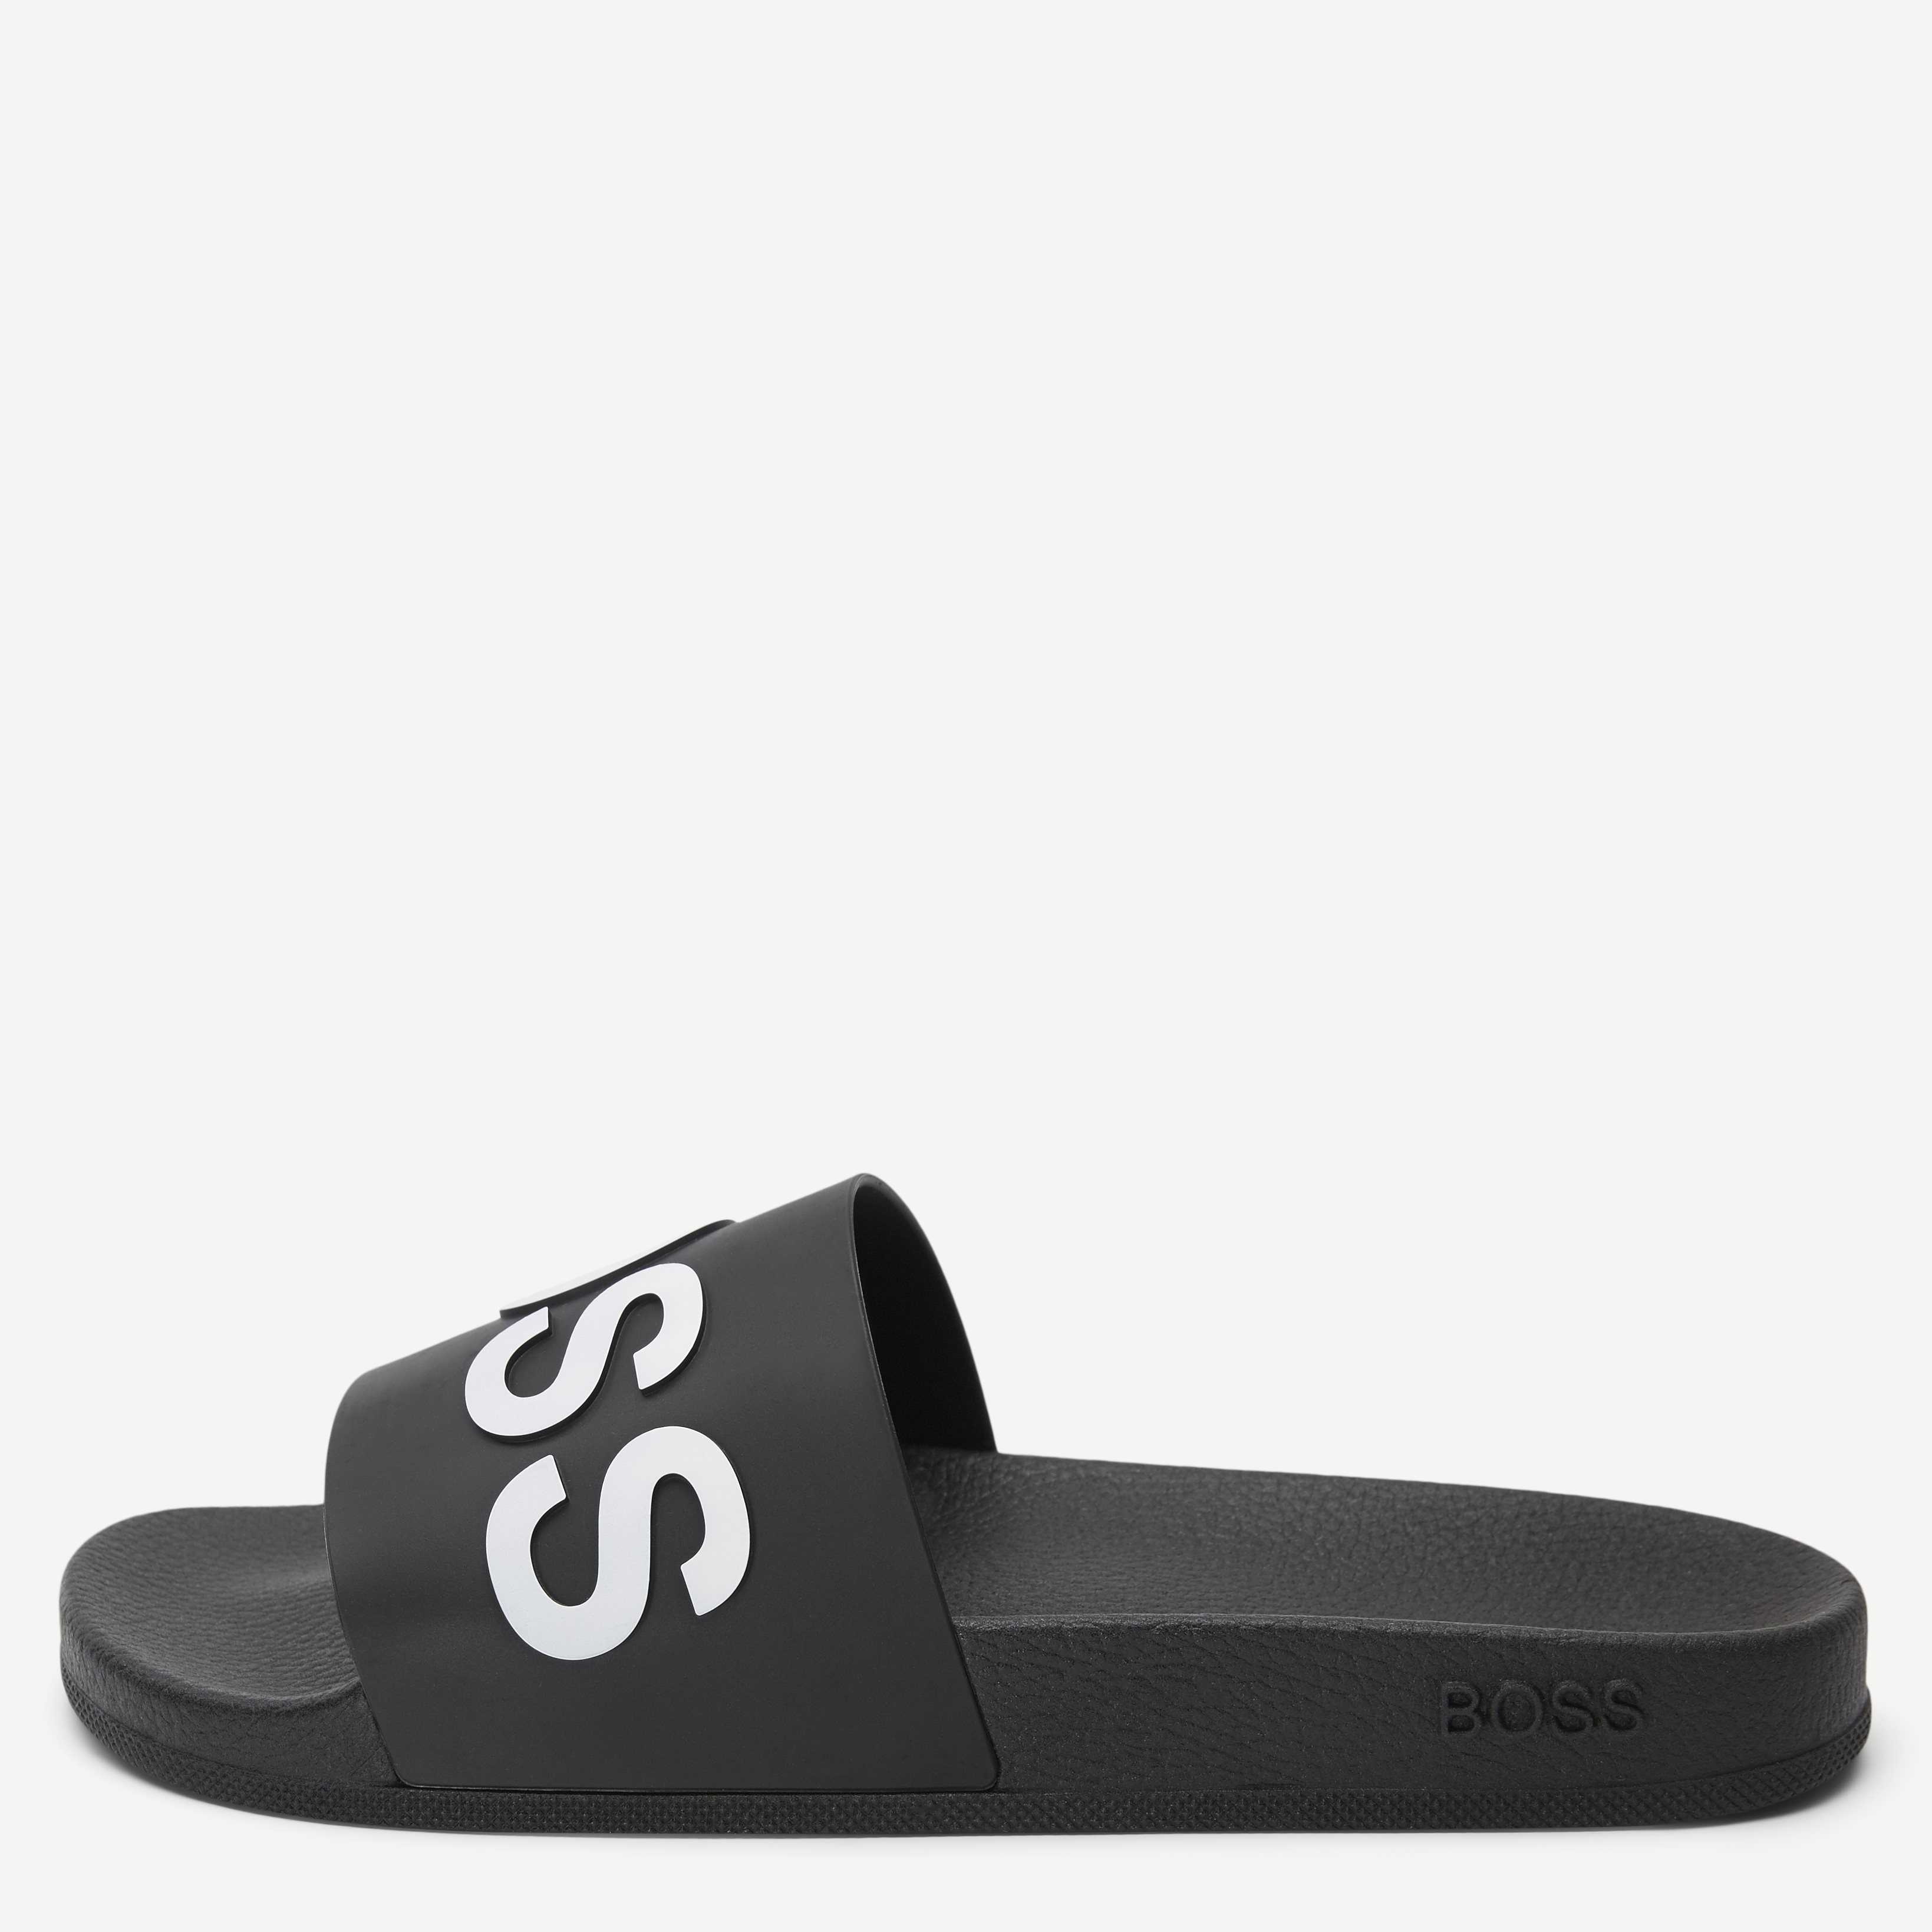 Bay _Slid_rblg Sandal - Shoes - Black